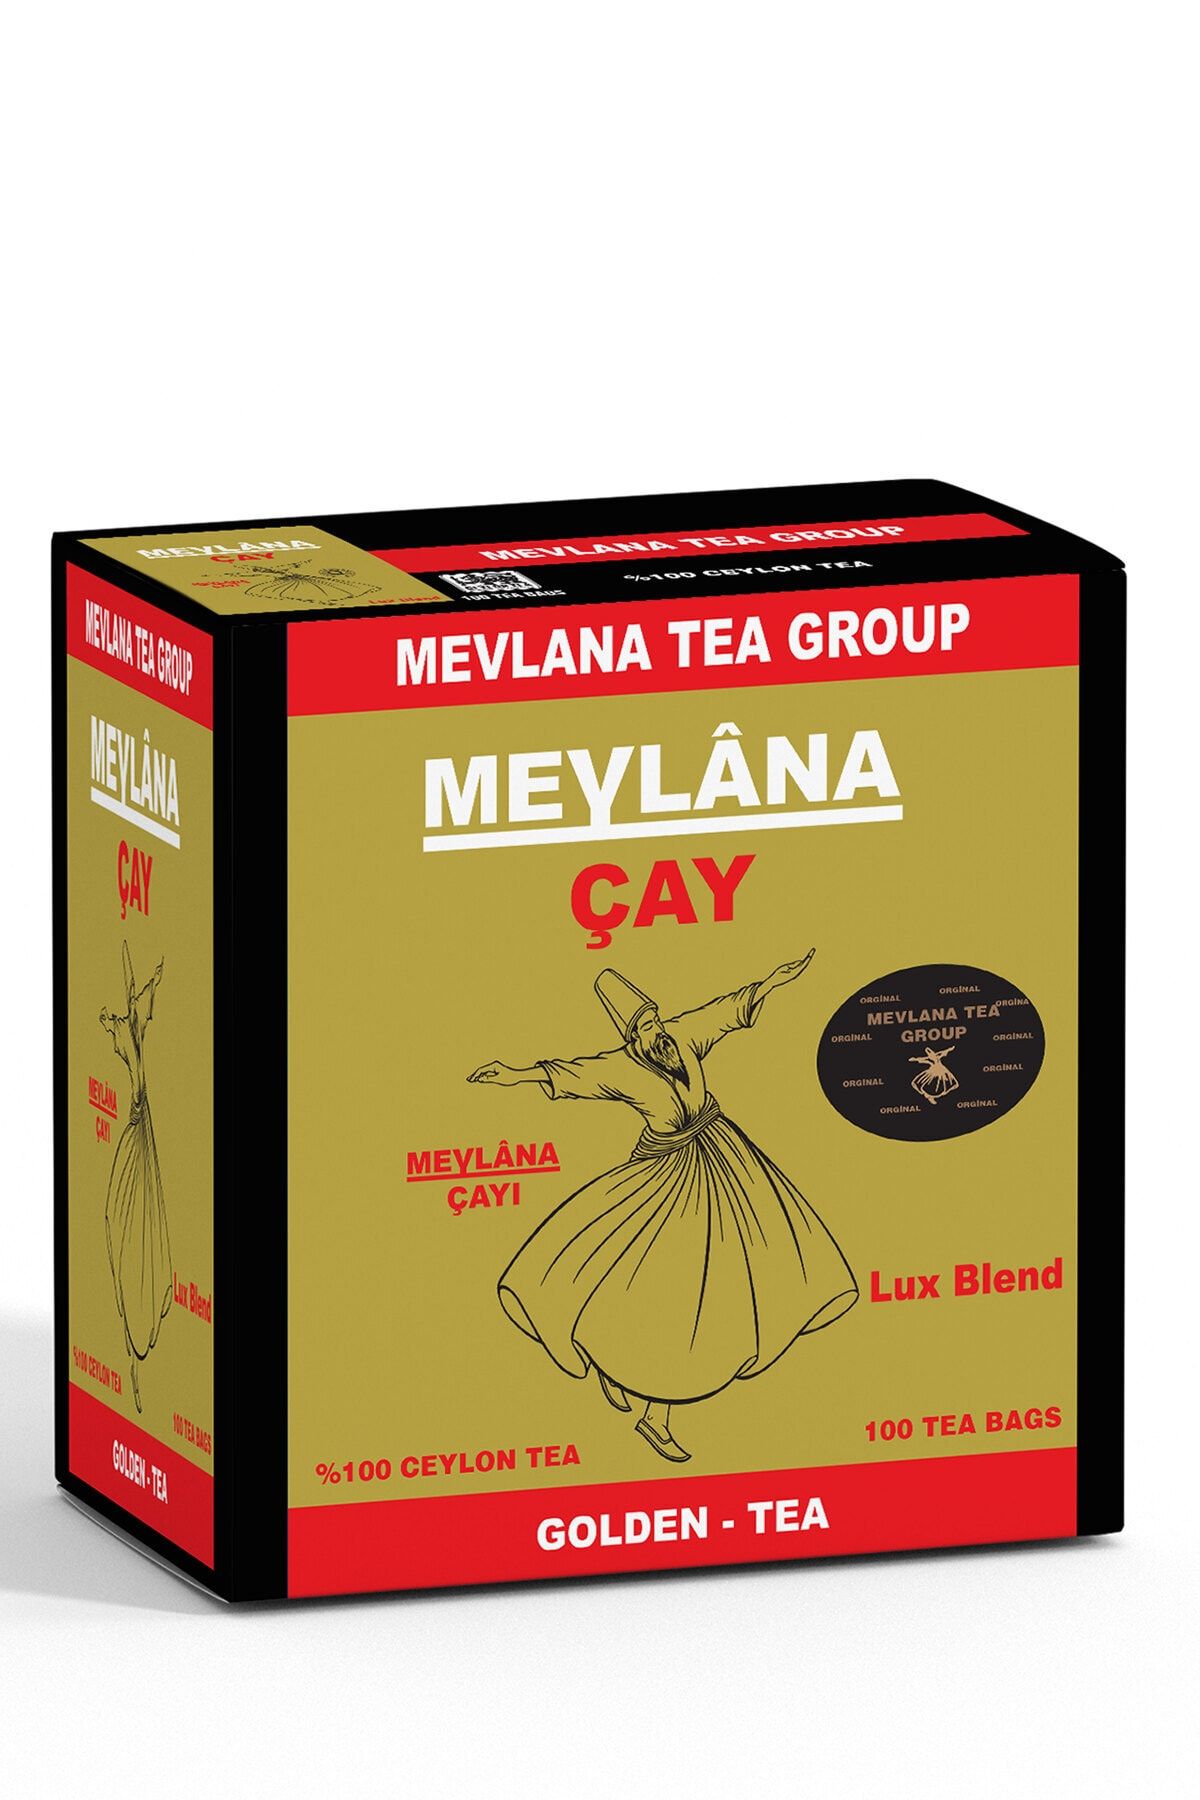 Mevlana Çay 100 Adet - Golden Tea %100 Ceylon Sri Lanka Sallama Mevlana Tea Group 100 Std. Saf Yaprak Çay